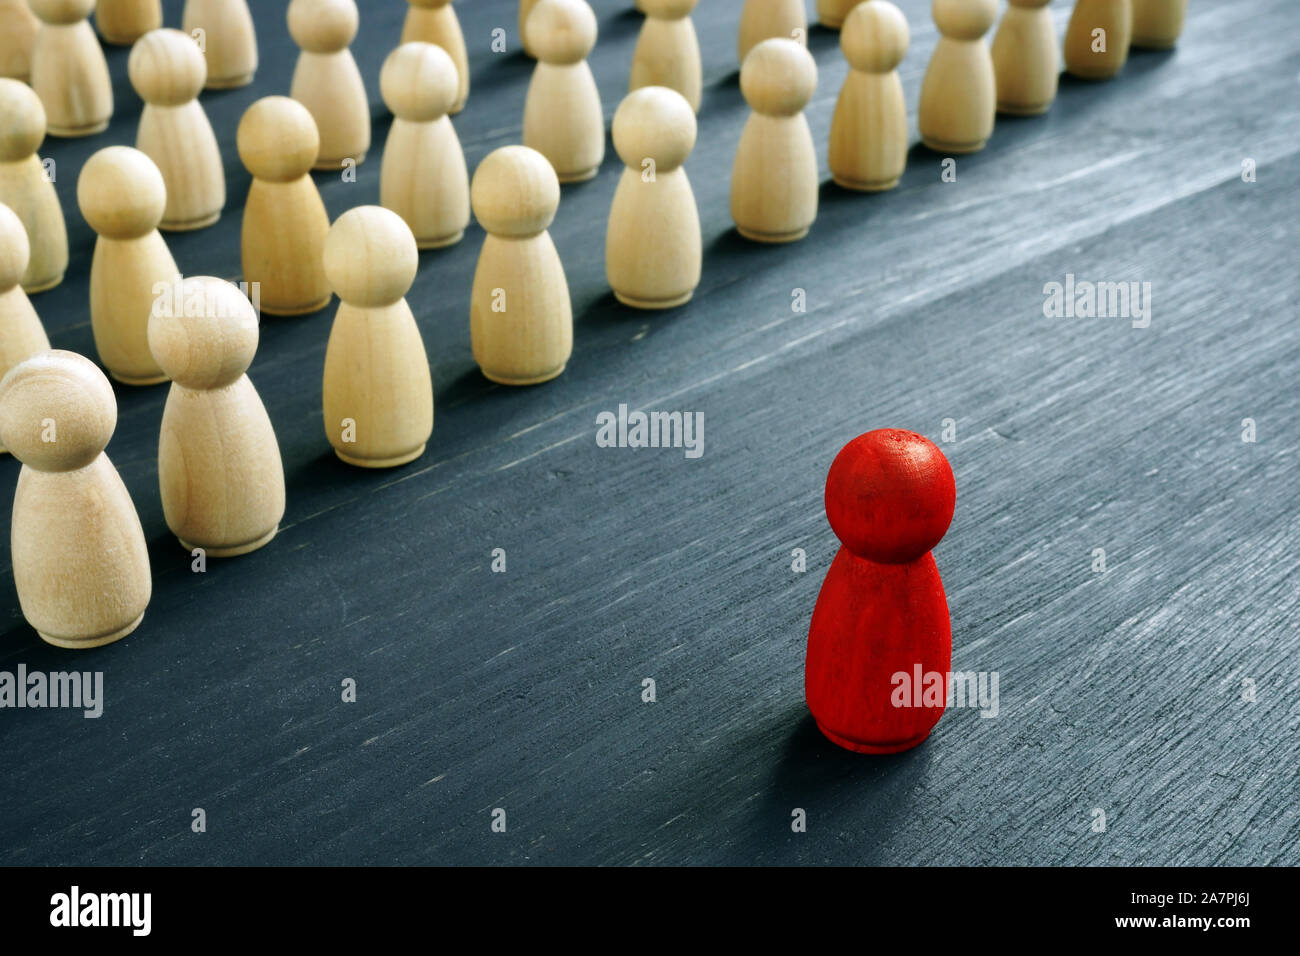 Concept de gestion du leadership. La figure Rouge comme chef en face de figures en bois. Banque D'Images